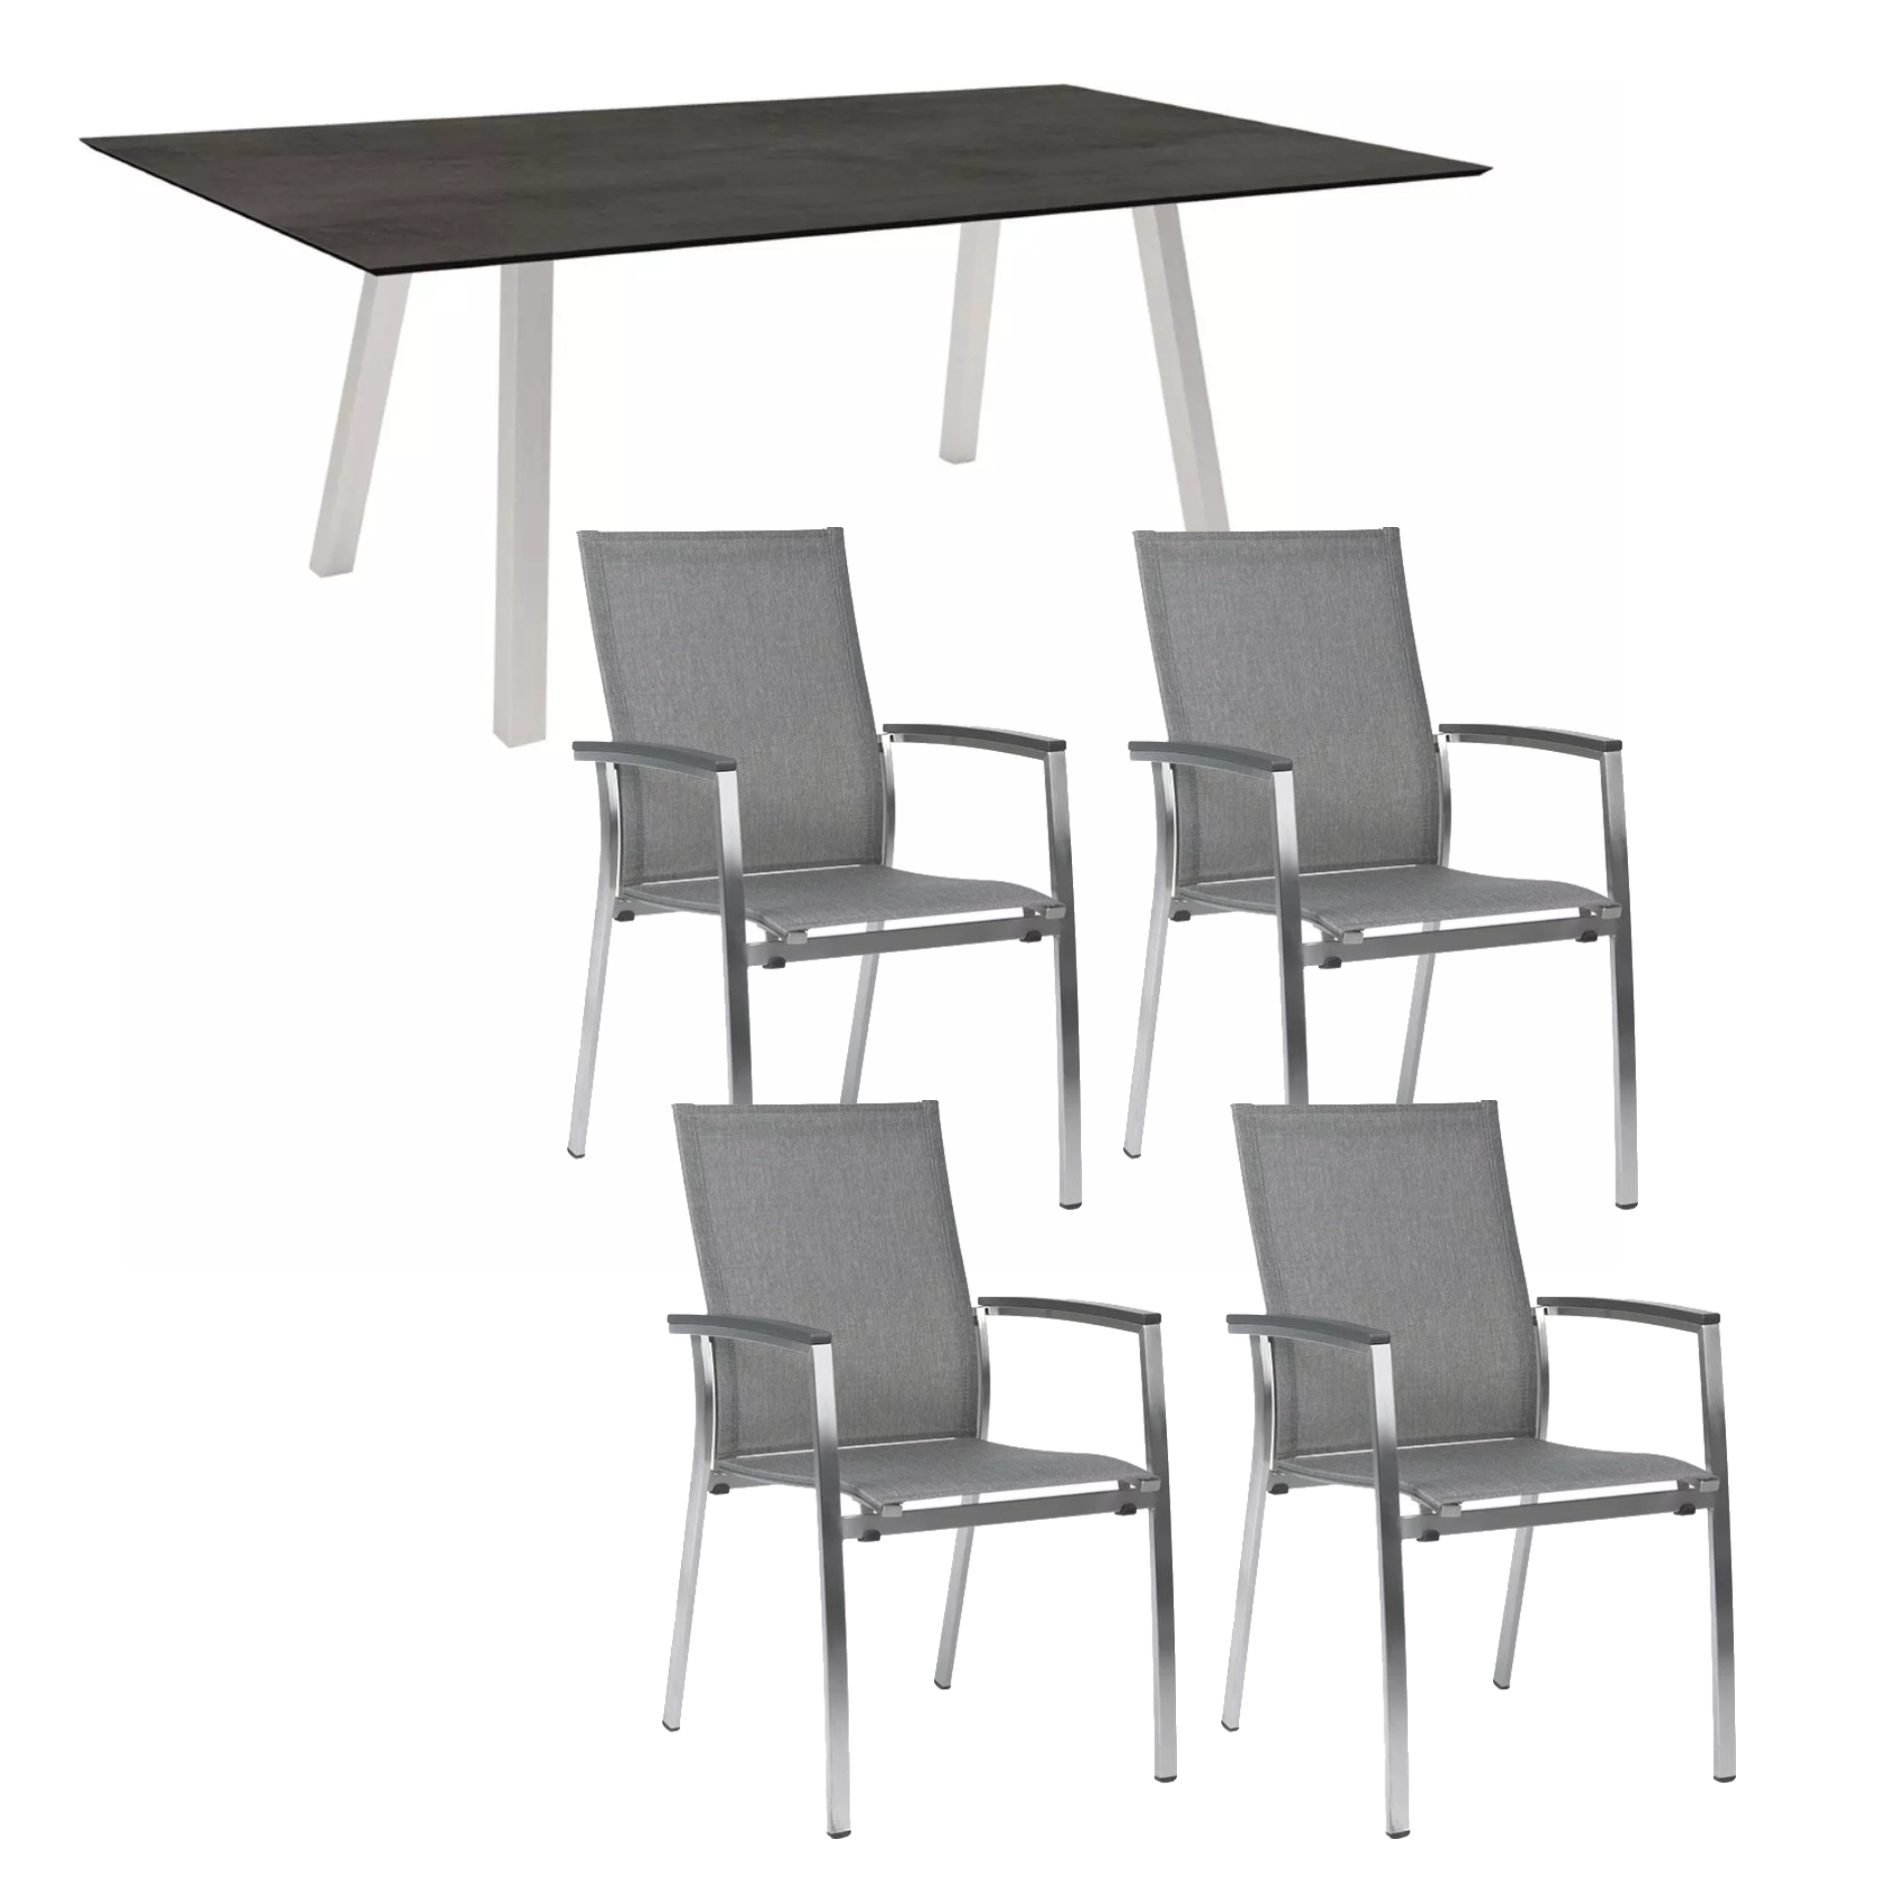 Stern Gartenmöbel-Set mit Stuhl "Mika" und Gartentisch "Interno" 180x100 cm, Gestell Edelstahl, Sitzfläche Textil Leinen grau, Tischplatte HPL Zement